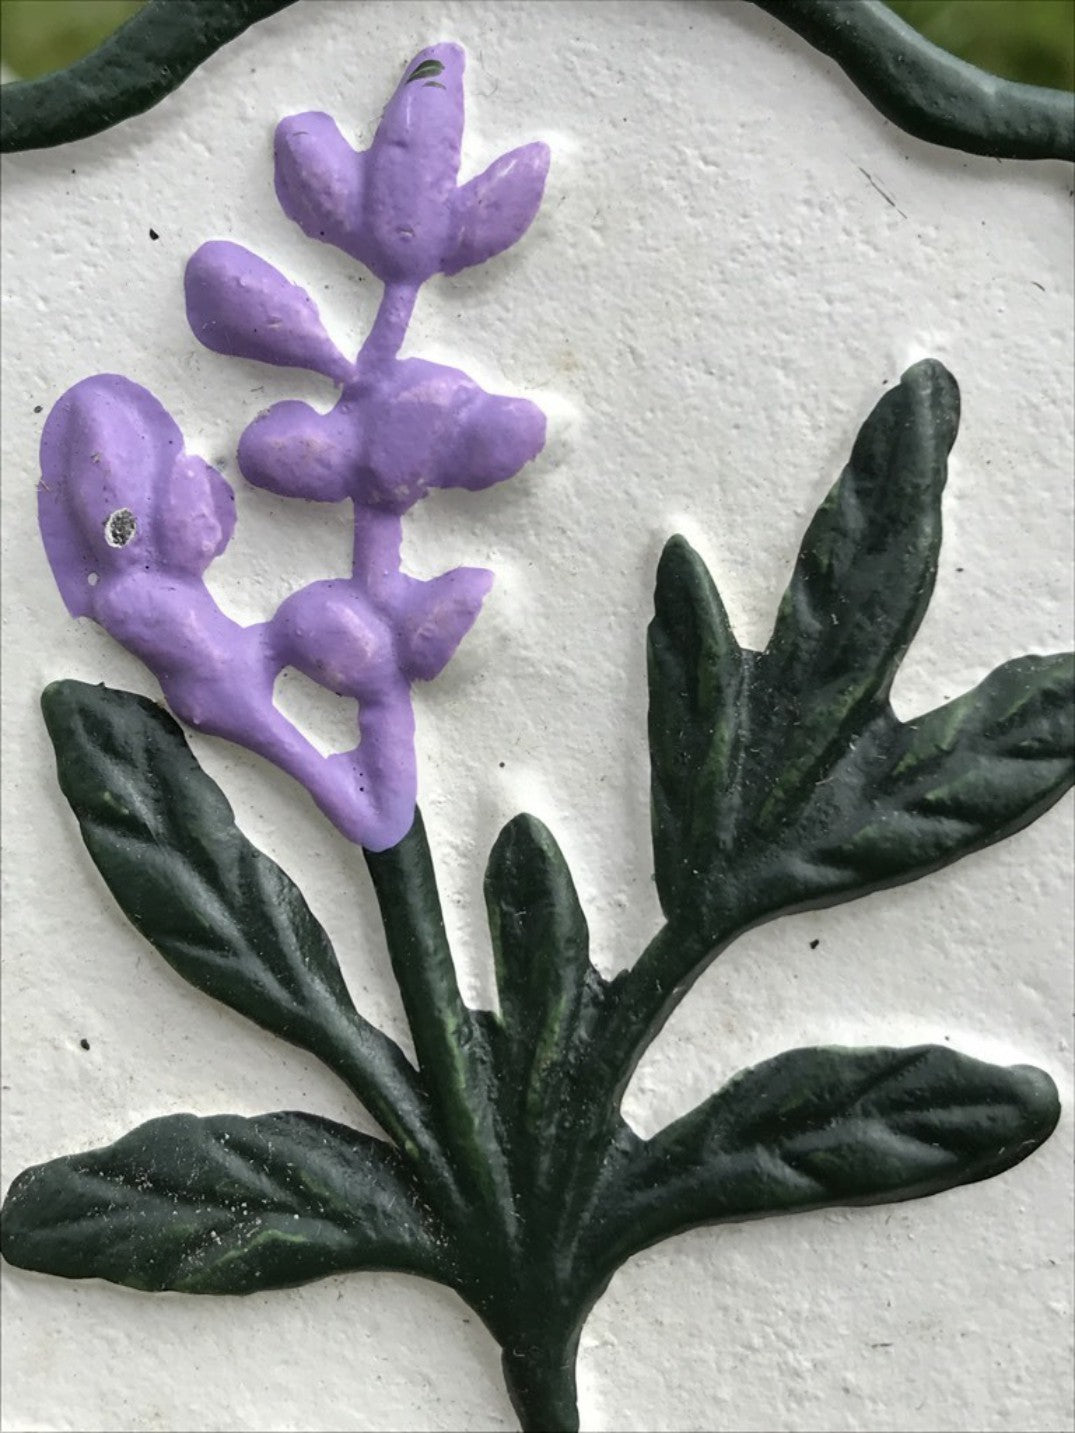 Garden Herb Sign “SAGE” Cast Iron Herb Marker